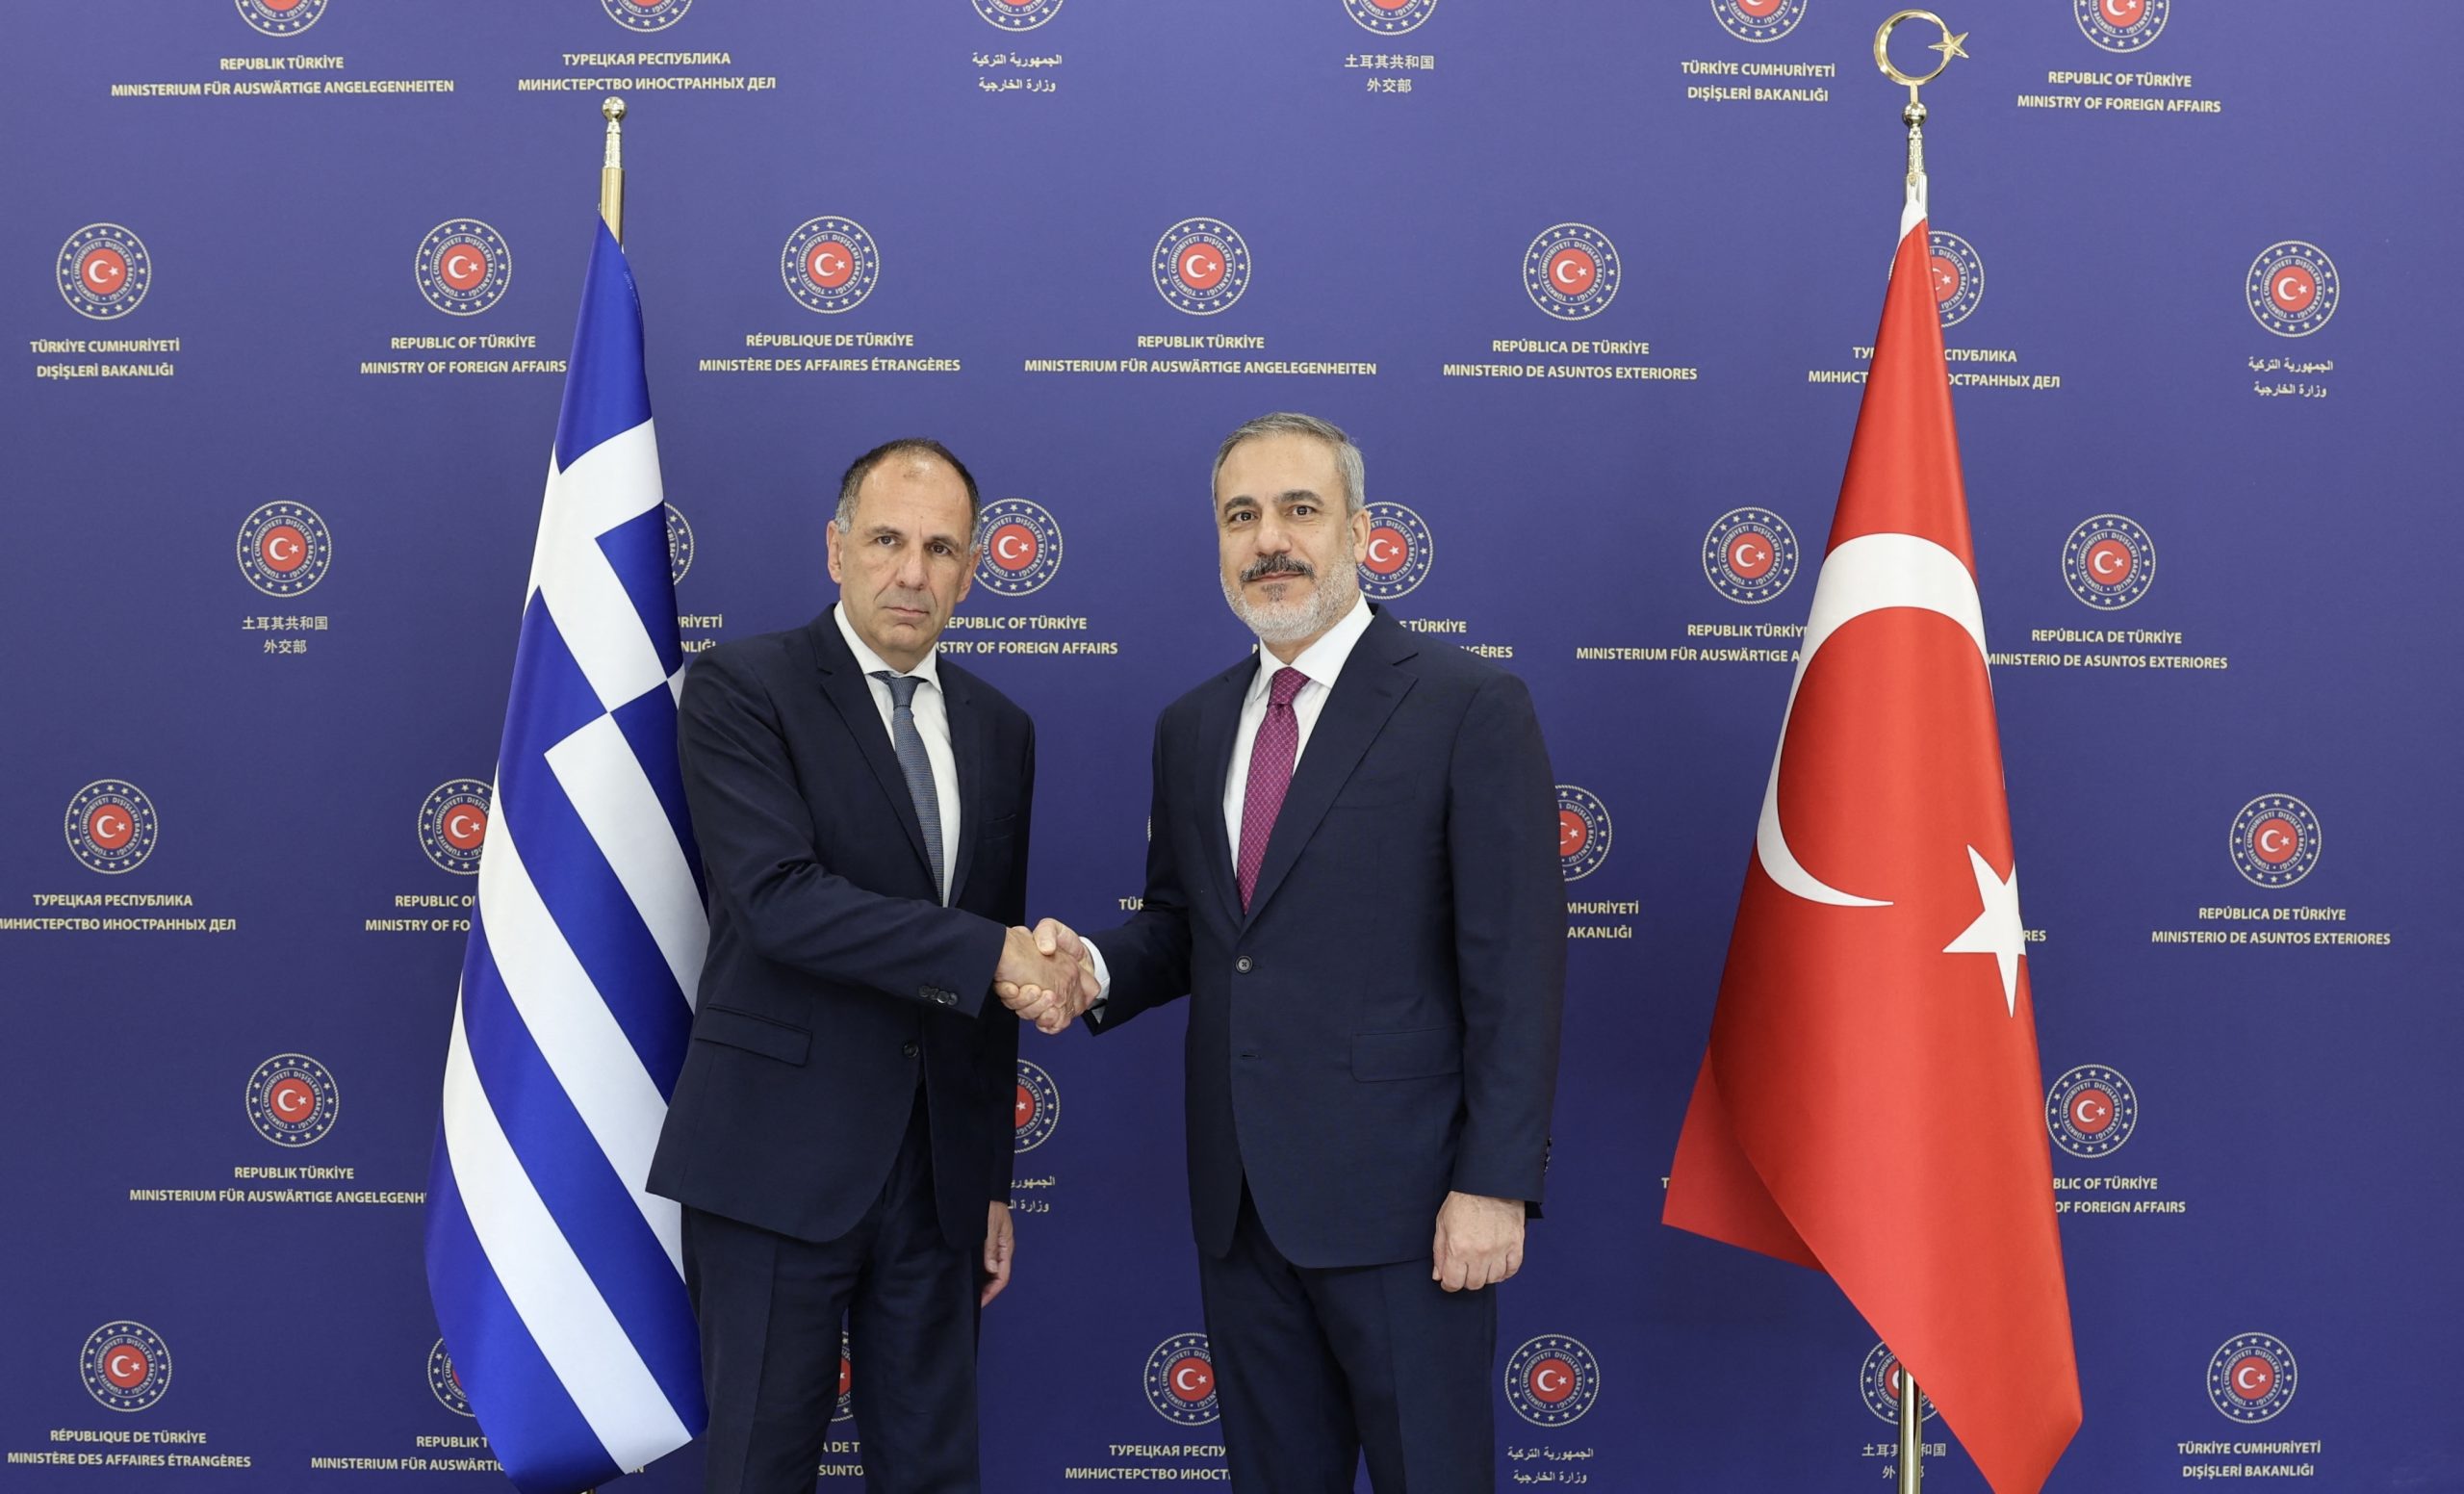 Νέα αμφισβήτηση της ελληνικής κυριαρχίας στα νησιά από την Τουρκία – Τι απαντά το ΥΠΕΞ